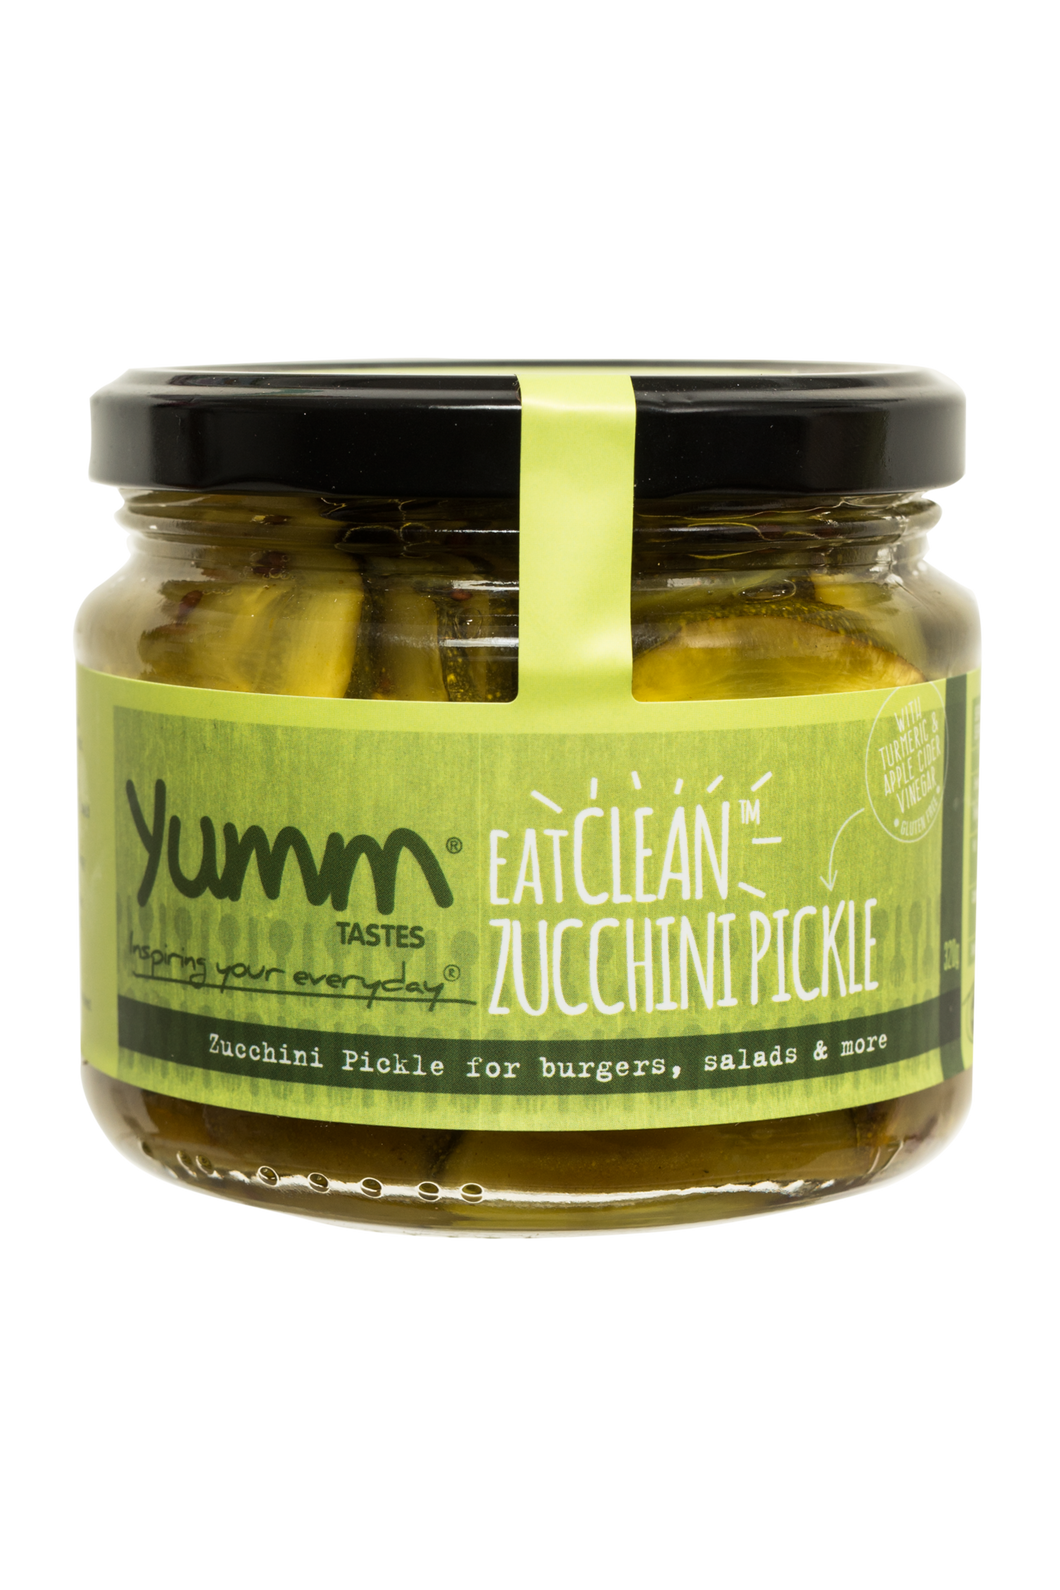 EatClean Zucchini Pickle - yumm tastes